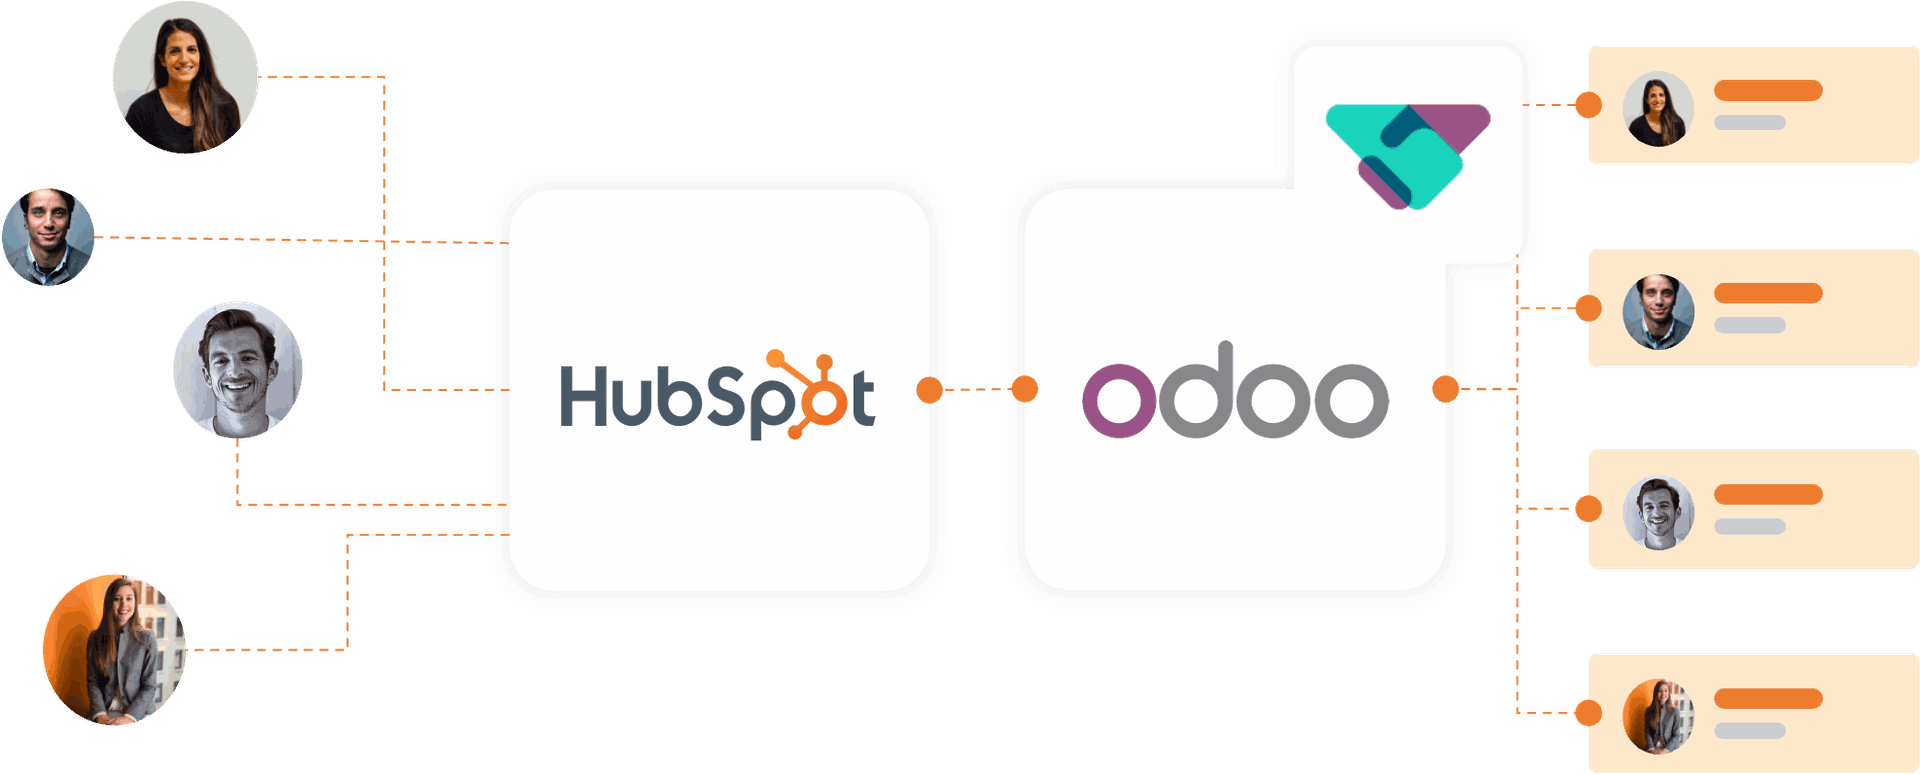 Odoo Hubspot Integration 